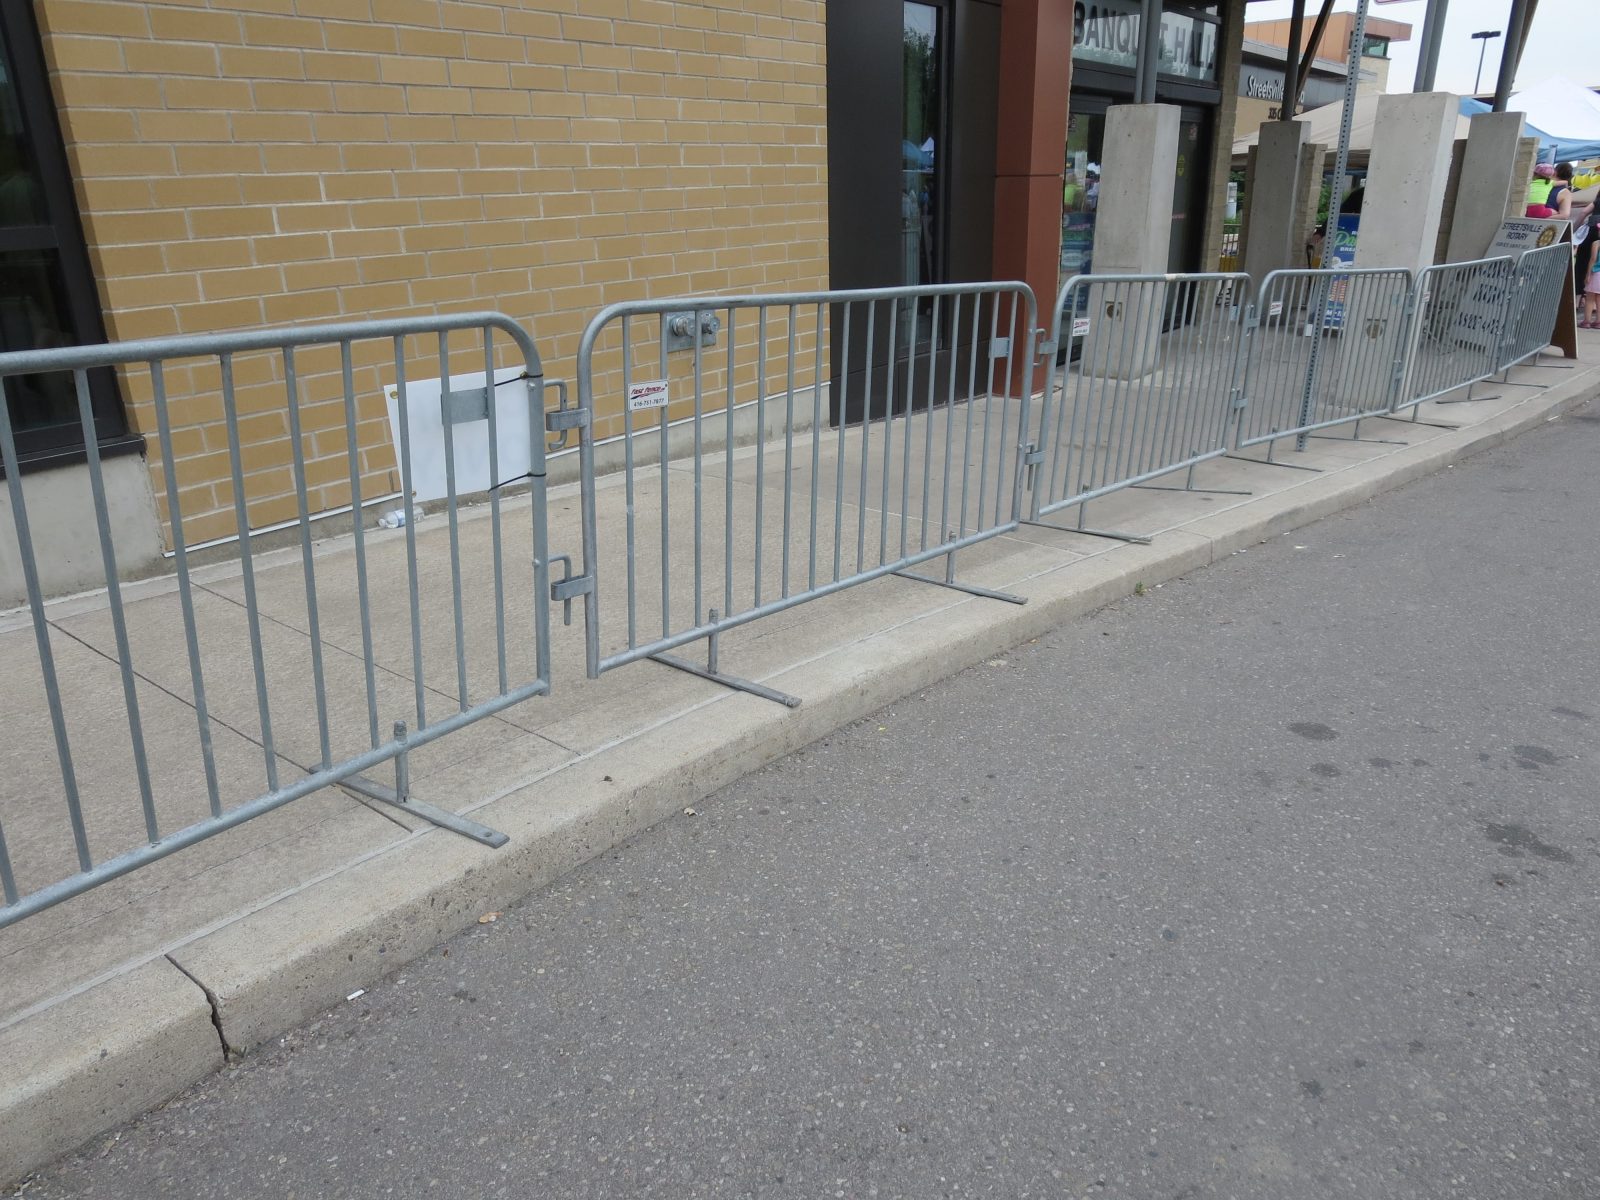 Crowd control barricades